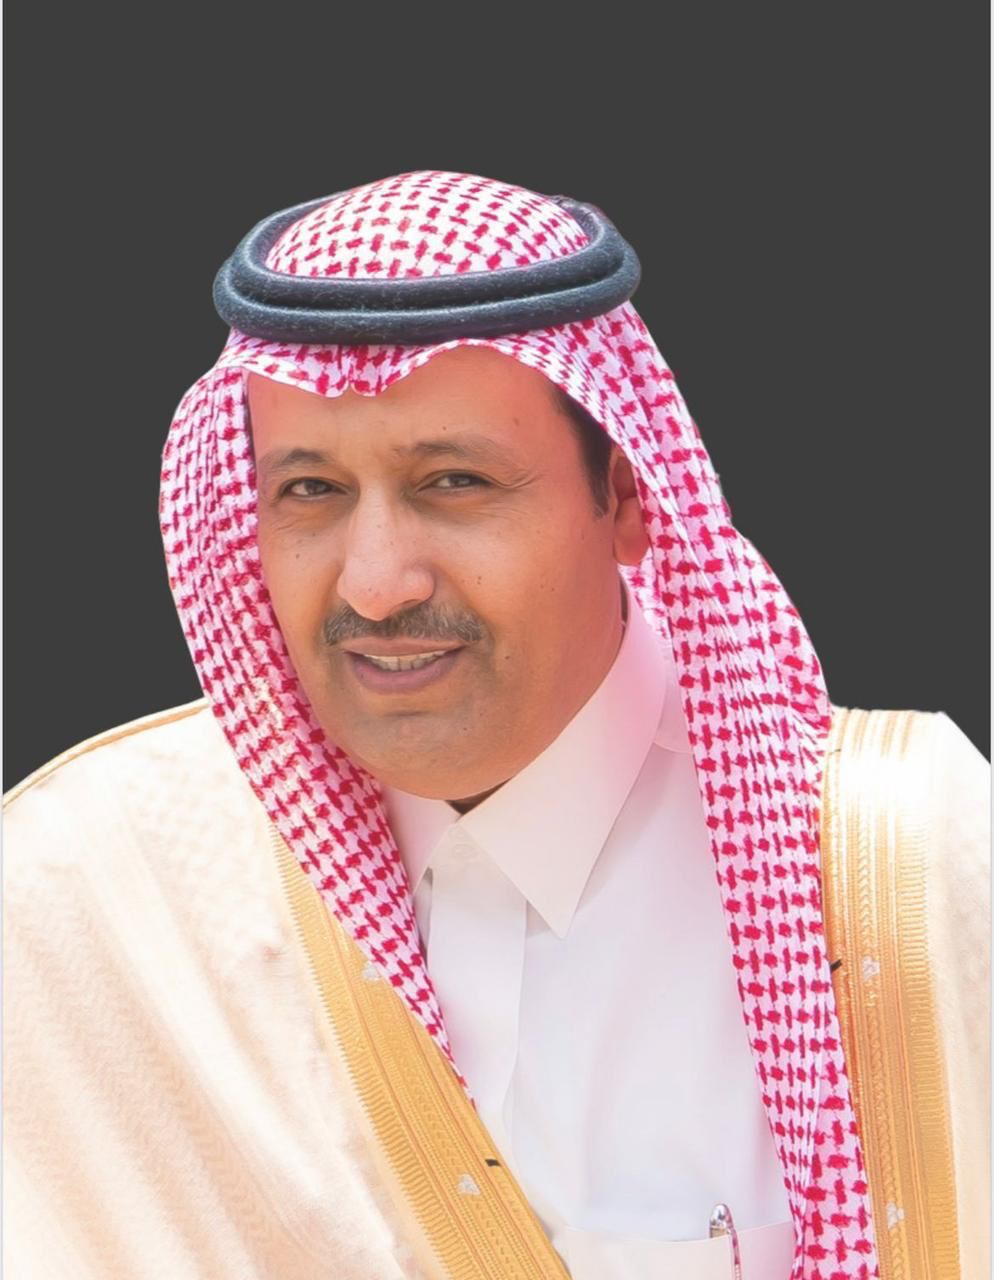 أمير منطقة الباحة يرأس اجتماع متابعة مشروع تطوير المطار